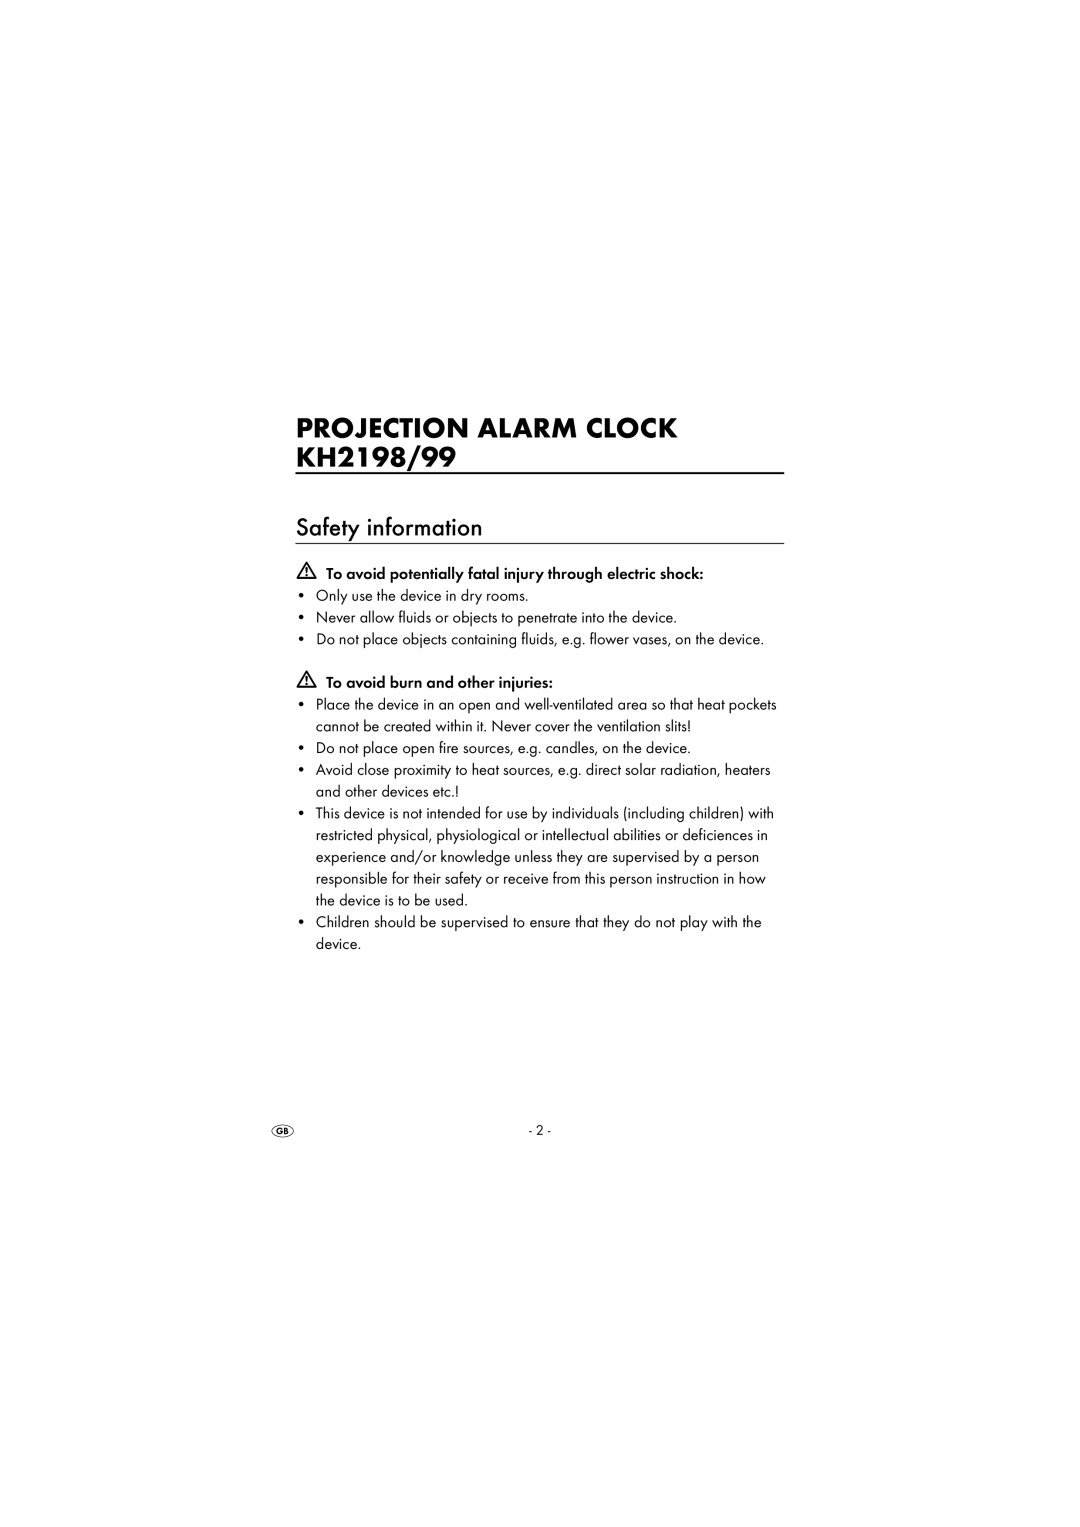 Kompernass KH 2199, KH 2198 manual PROJECTION ALARM CLOCK KH2198/99, Safety information 